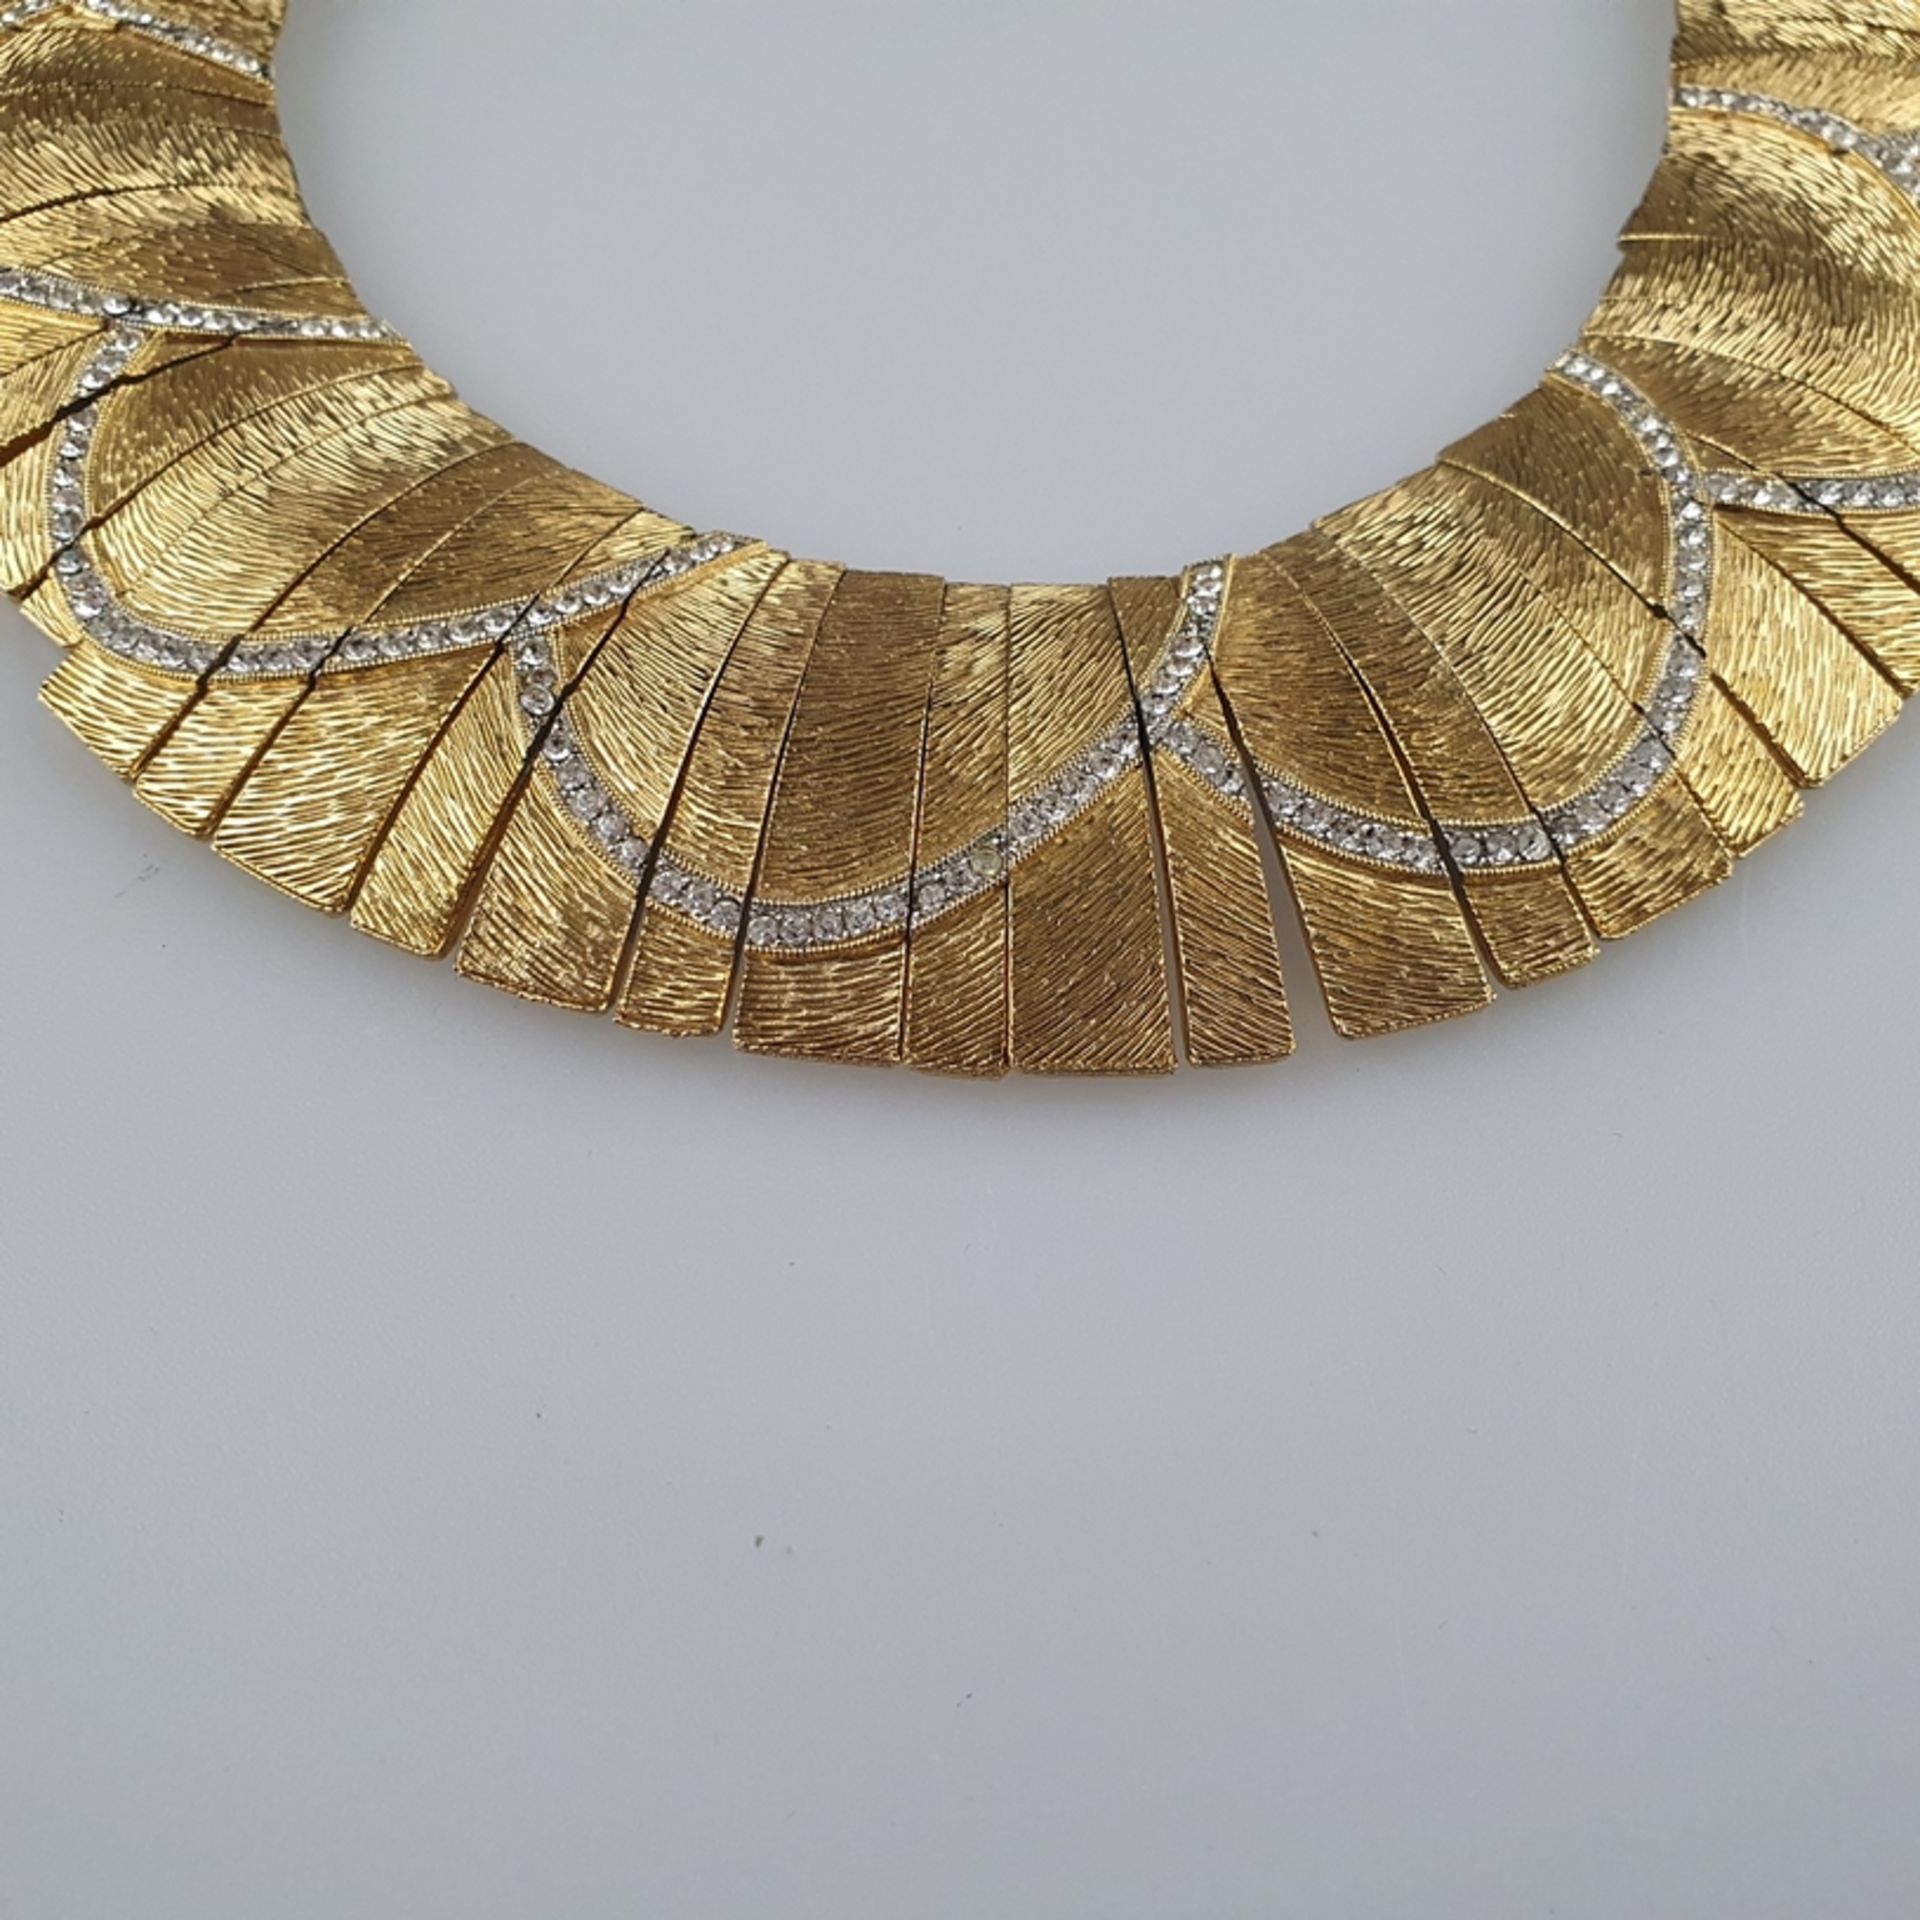 Schweres „Kleopatra-Kragen“-Collier - LES BERNARD, 1960/70er Jahre, bewegliche vergoldete Stäbcheng - Bild 4 aus 8